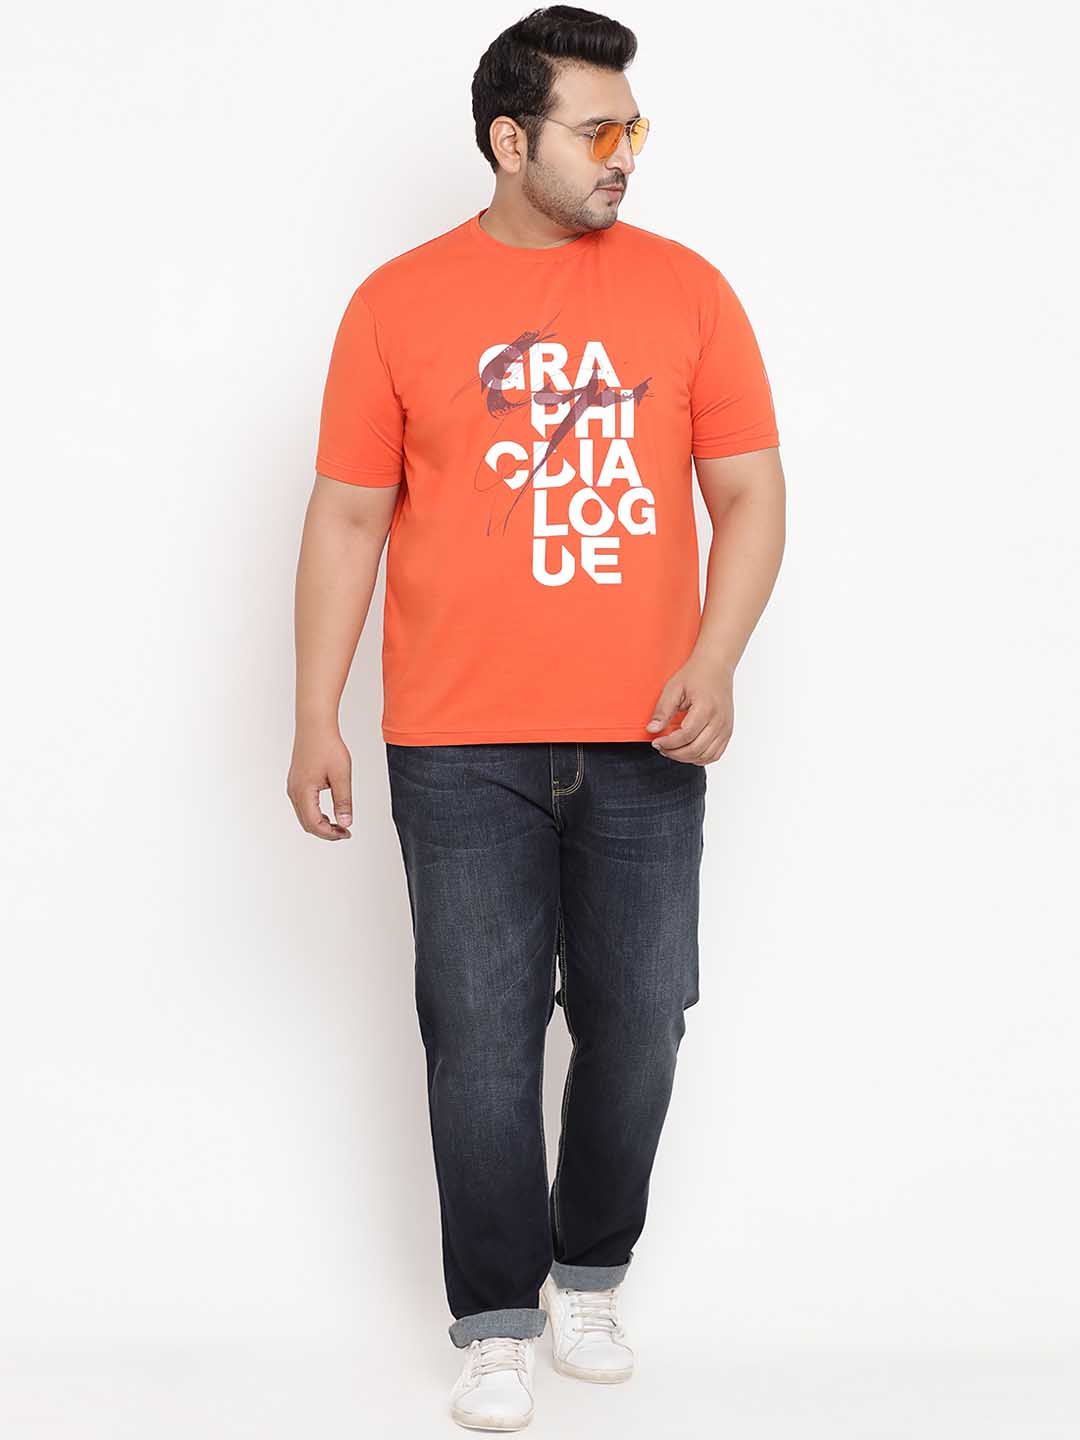 John Pride Orange T-Shirt